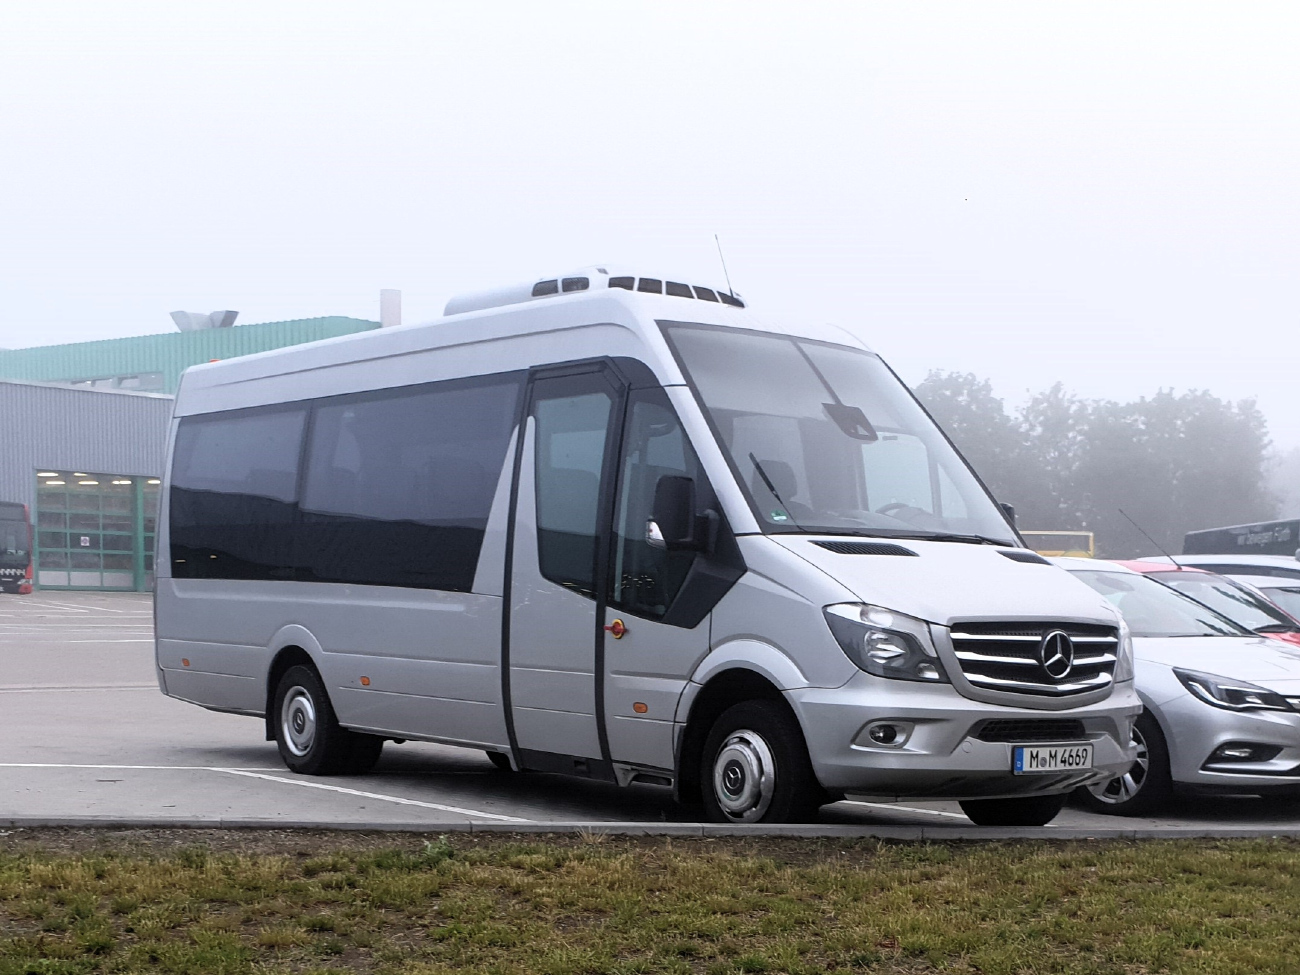 Munich, Mercedes-Benz Sprinter Travel 65 # M-M 4669